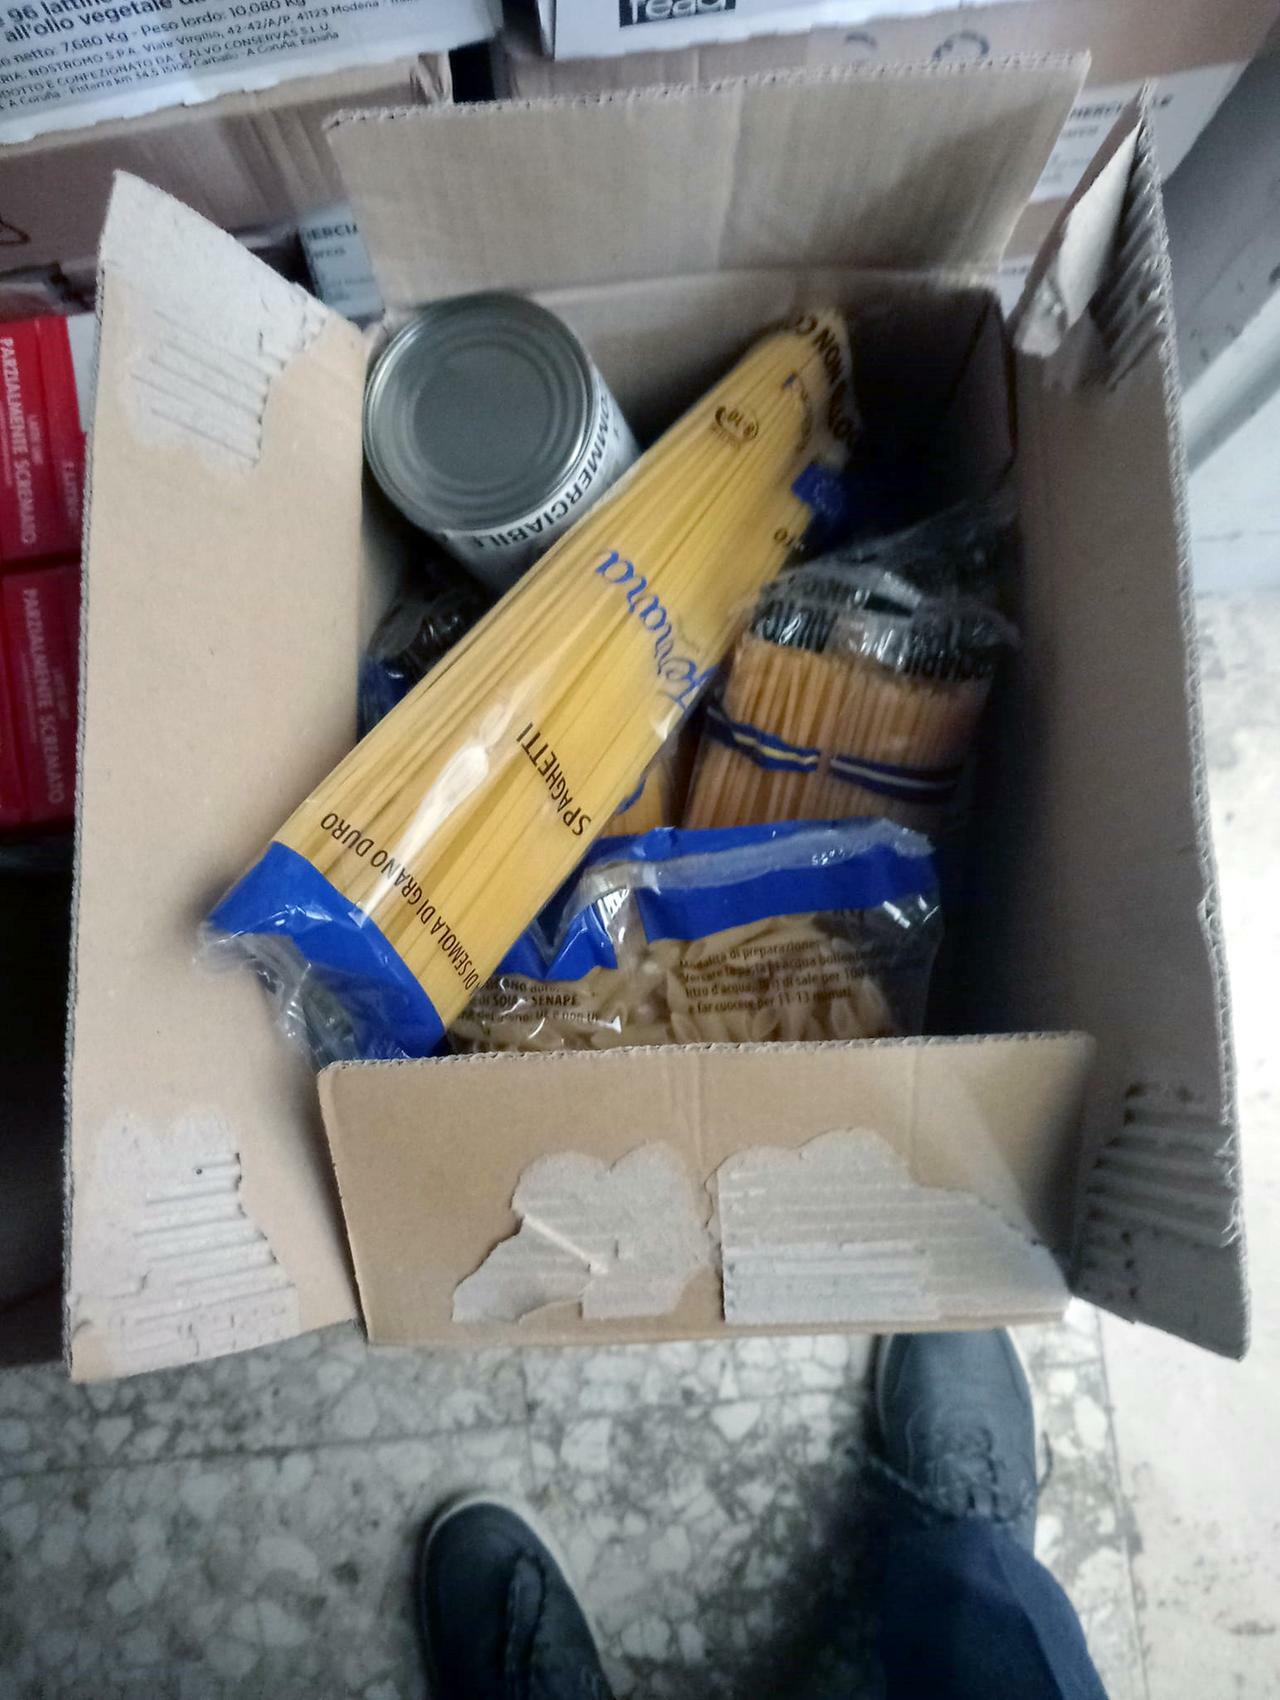 Pacchi di pasta nella spazzatura: erano destinati ai poveri